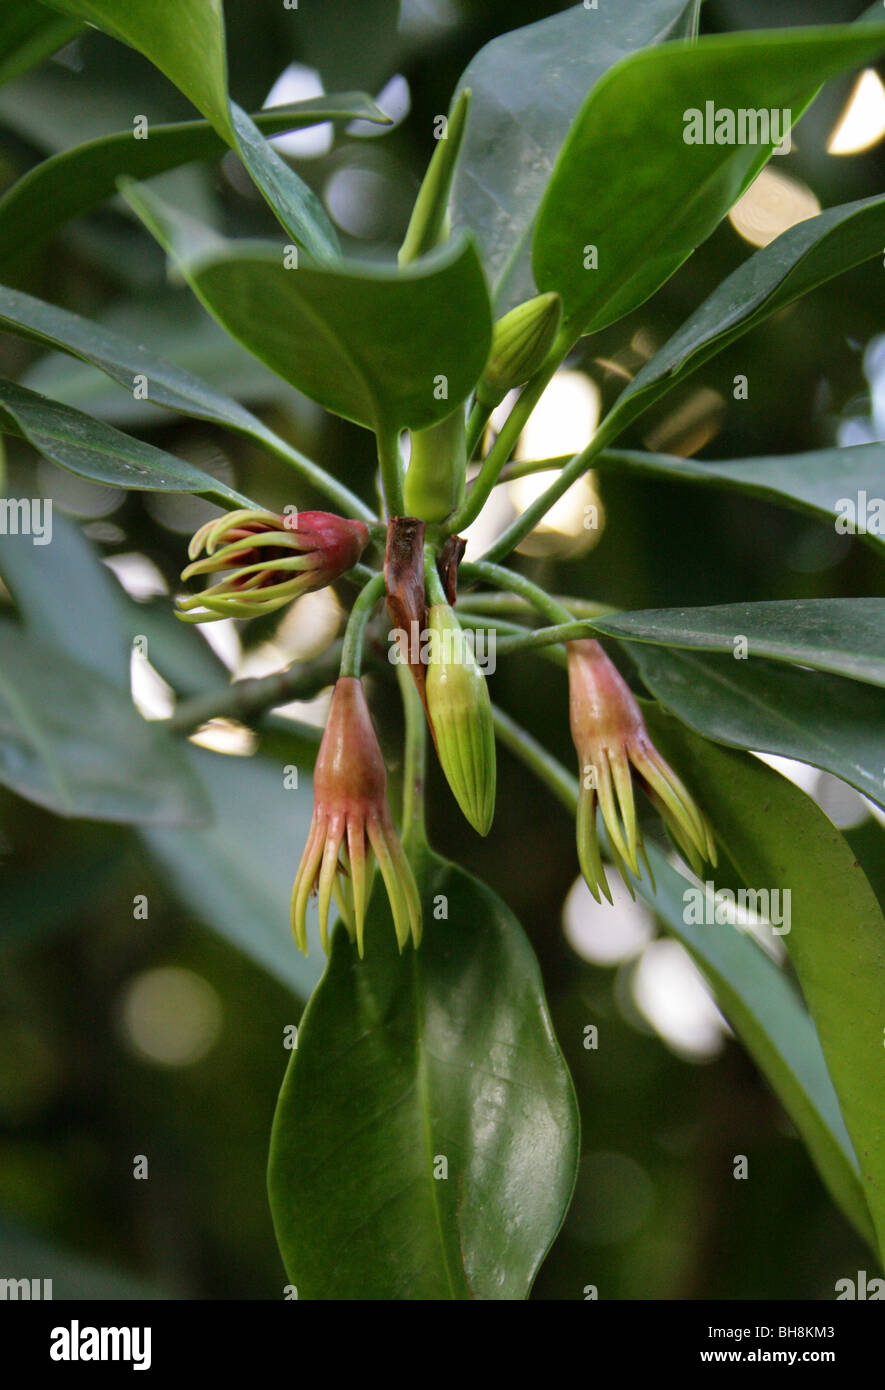 Burma Mangrove, Mangroven oder orientalische Mangrove Bruguiera Gymnorrhiza Rhizophoraceae, tropischen Asien und Pazifik, Australien. Stockfoto